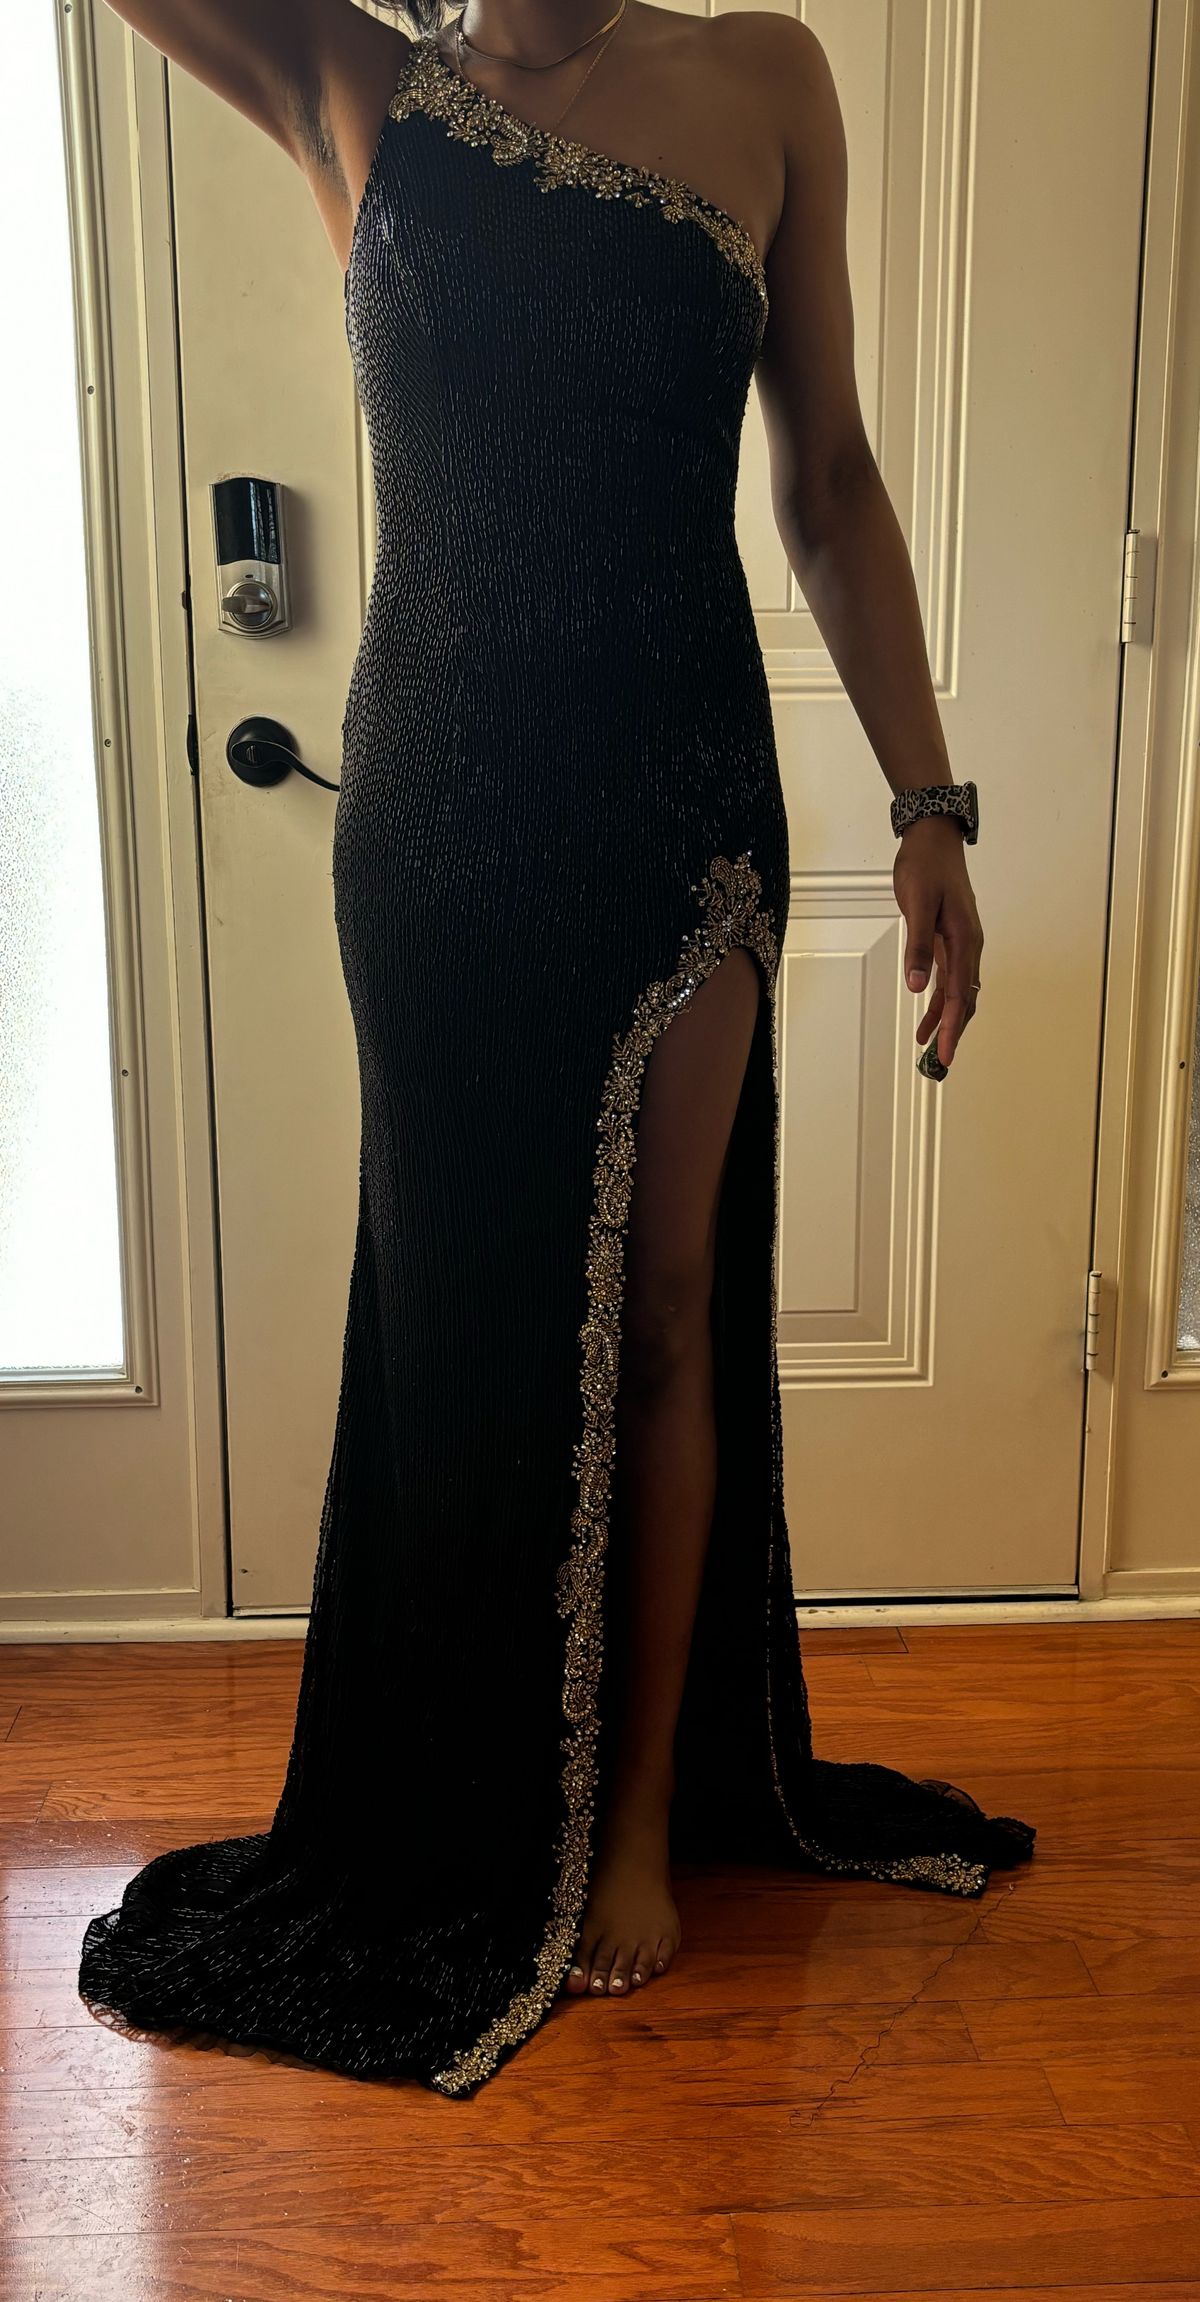 Style 88297 Ashley Lauren Size 2 Prom One Shoulder Black Side Slit Dress on Queenly